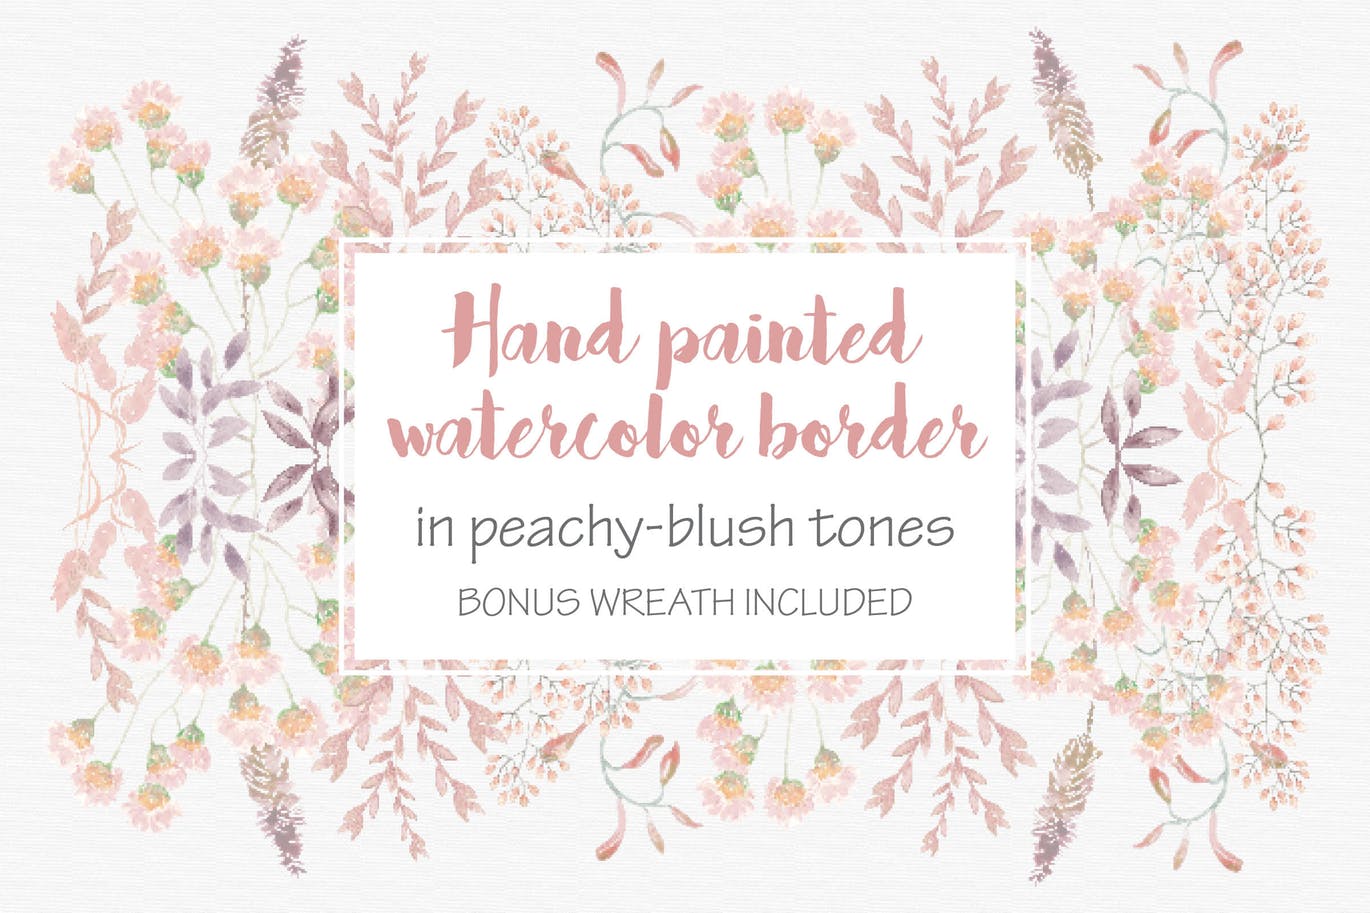 腮红&桃红色水彩手绘花朵/叶子图案第一素材精选PNG素材 Blush Pom Pom Floral Border插图